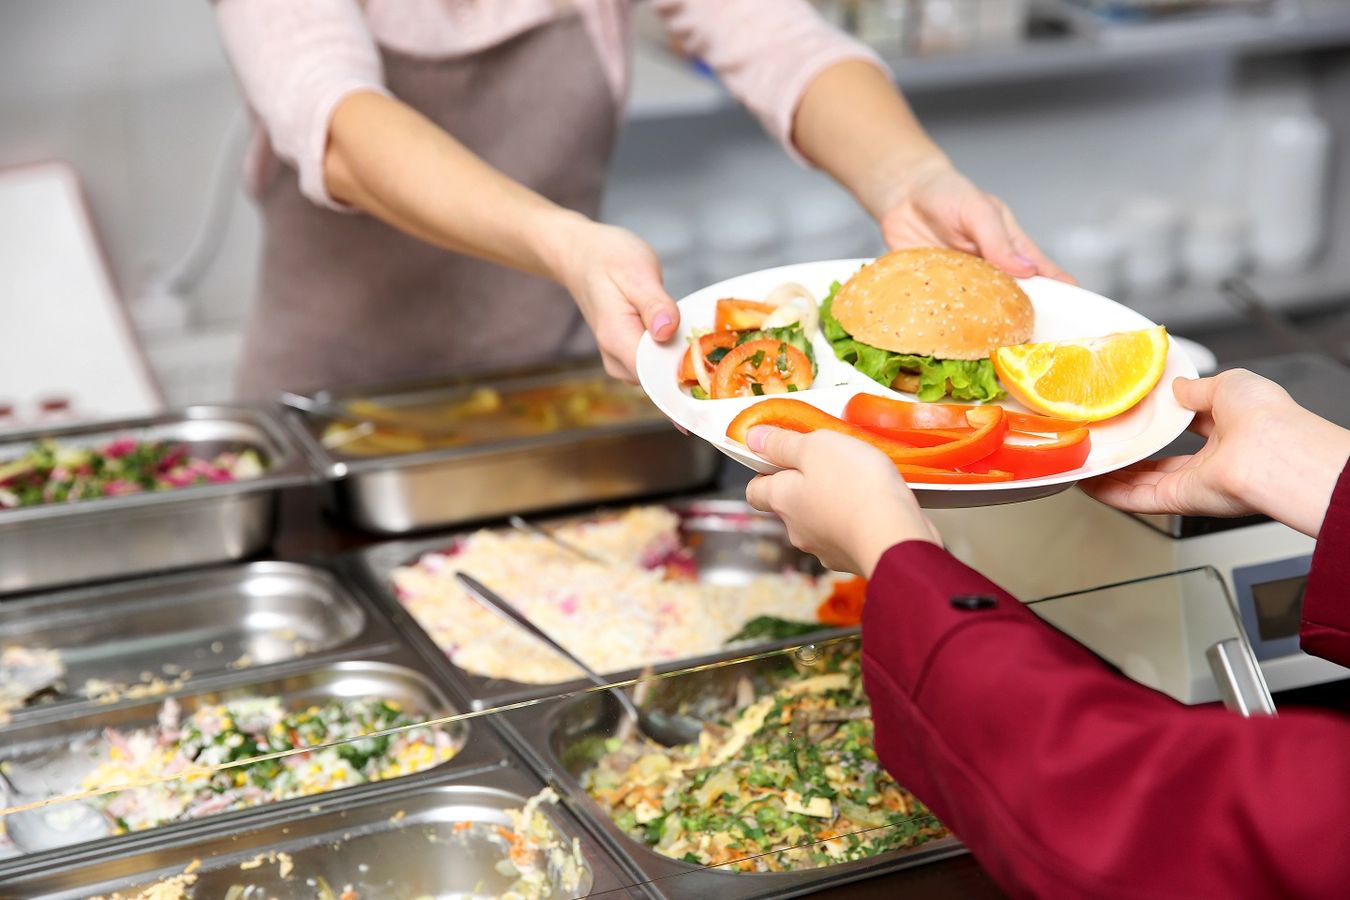 Mettre en place une politique de haute qualité alimentaire dans les collèges: l'exemple du Département de l’Hérault